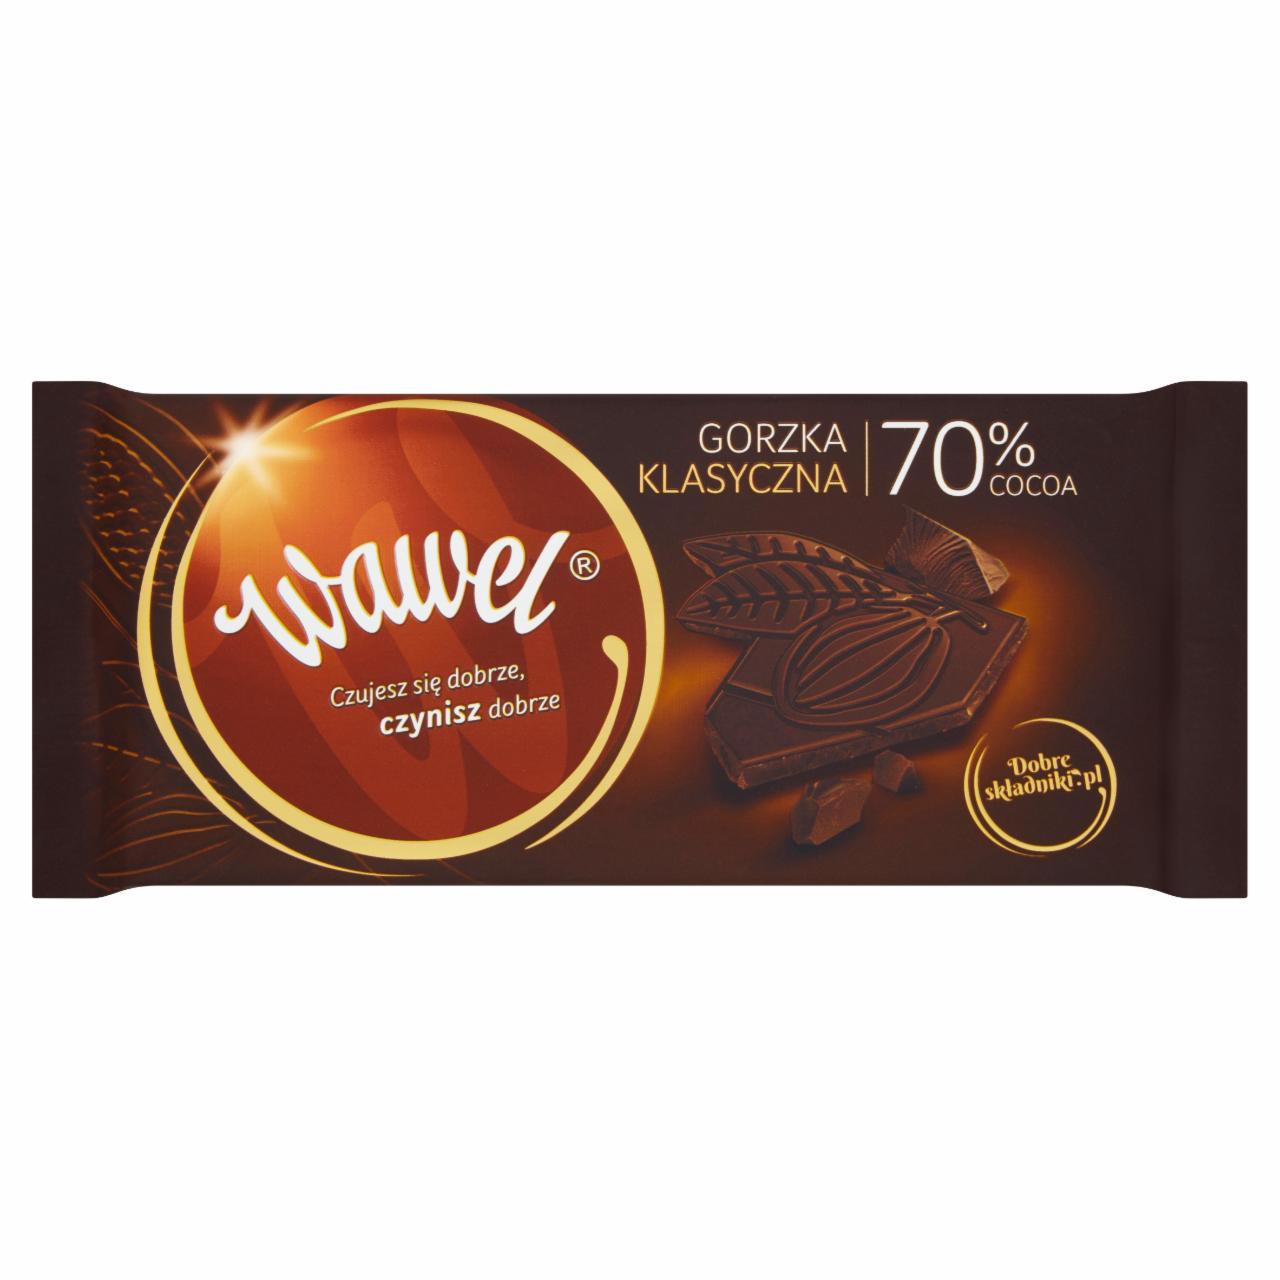 Zdjęcia - Wawel Czekolada gorzka klasyczna 70% cocoa 100 g